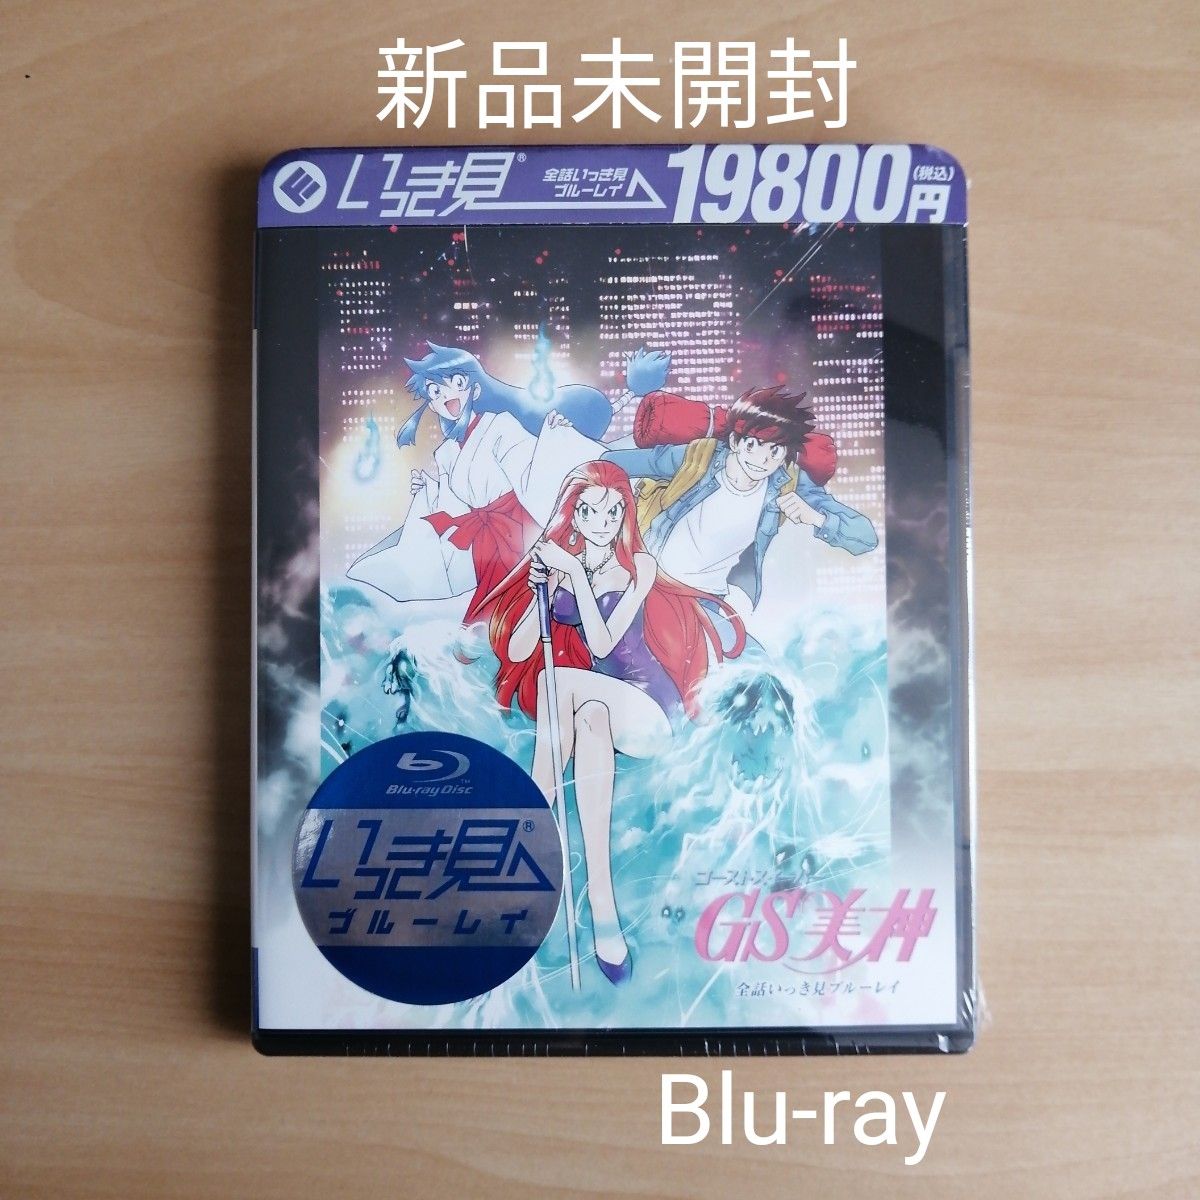 新品未開封★「GS美神」全話いっき見ブルーレイ Blu-ray